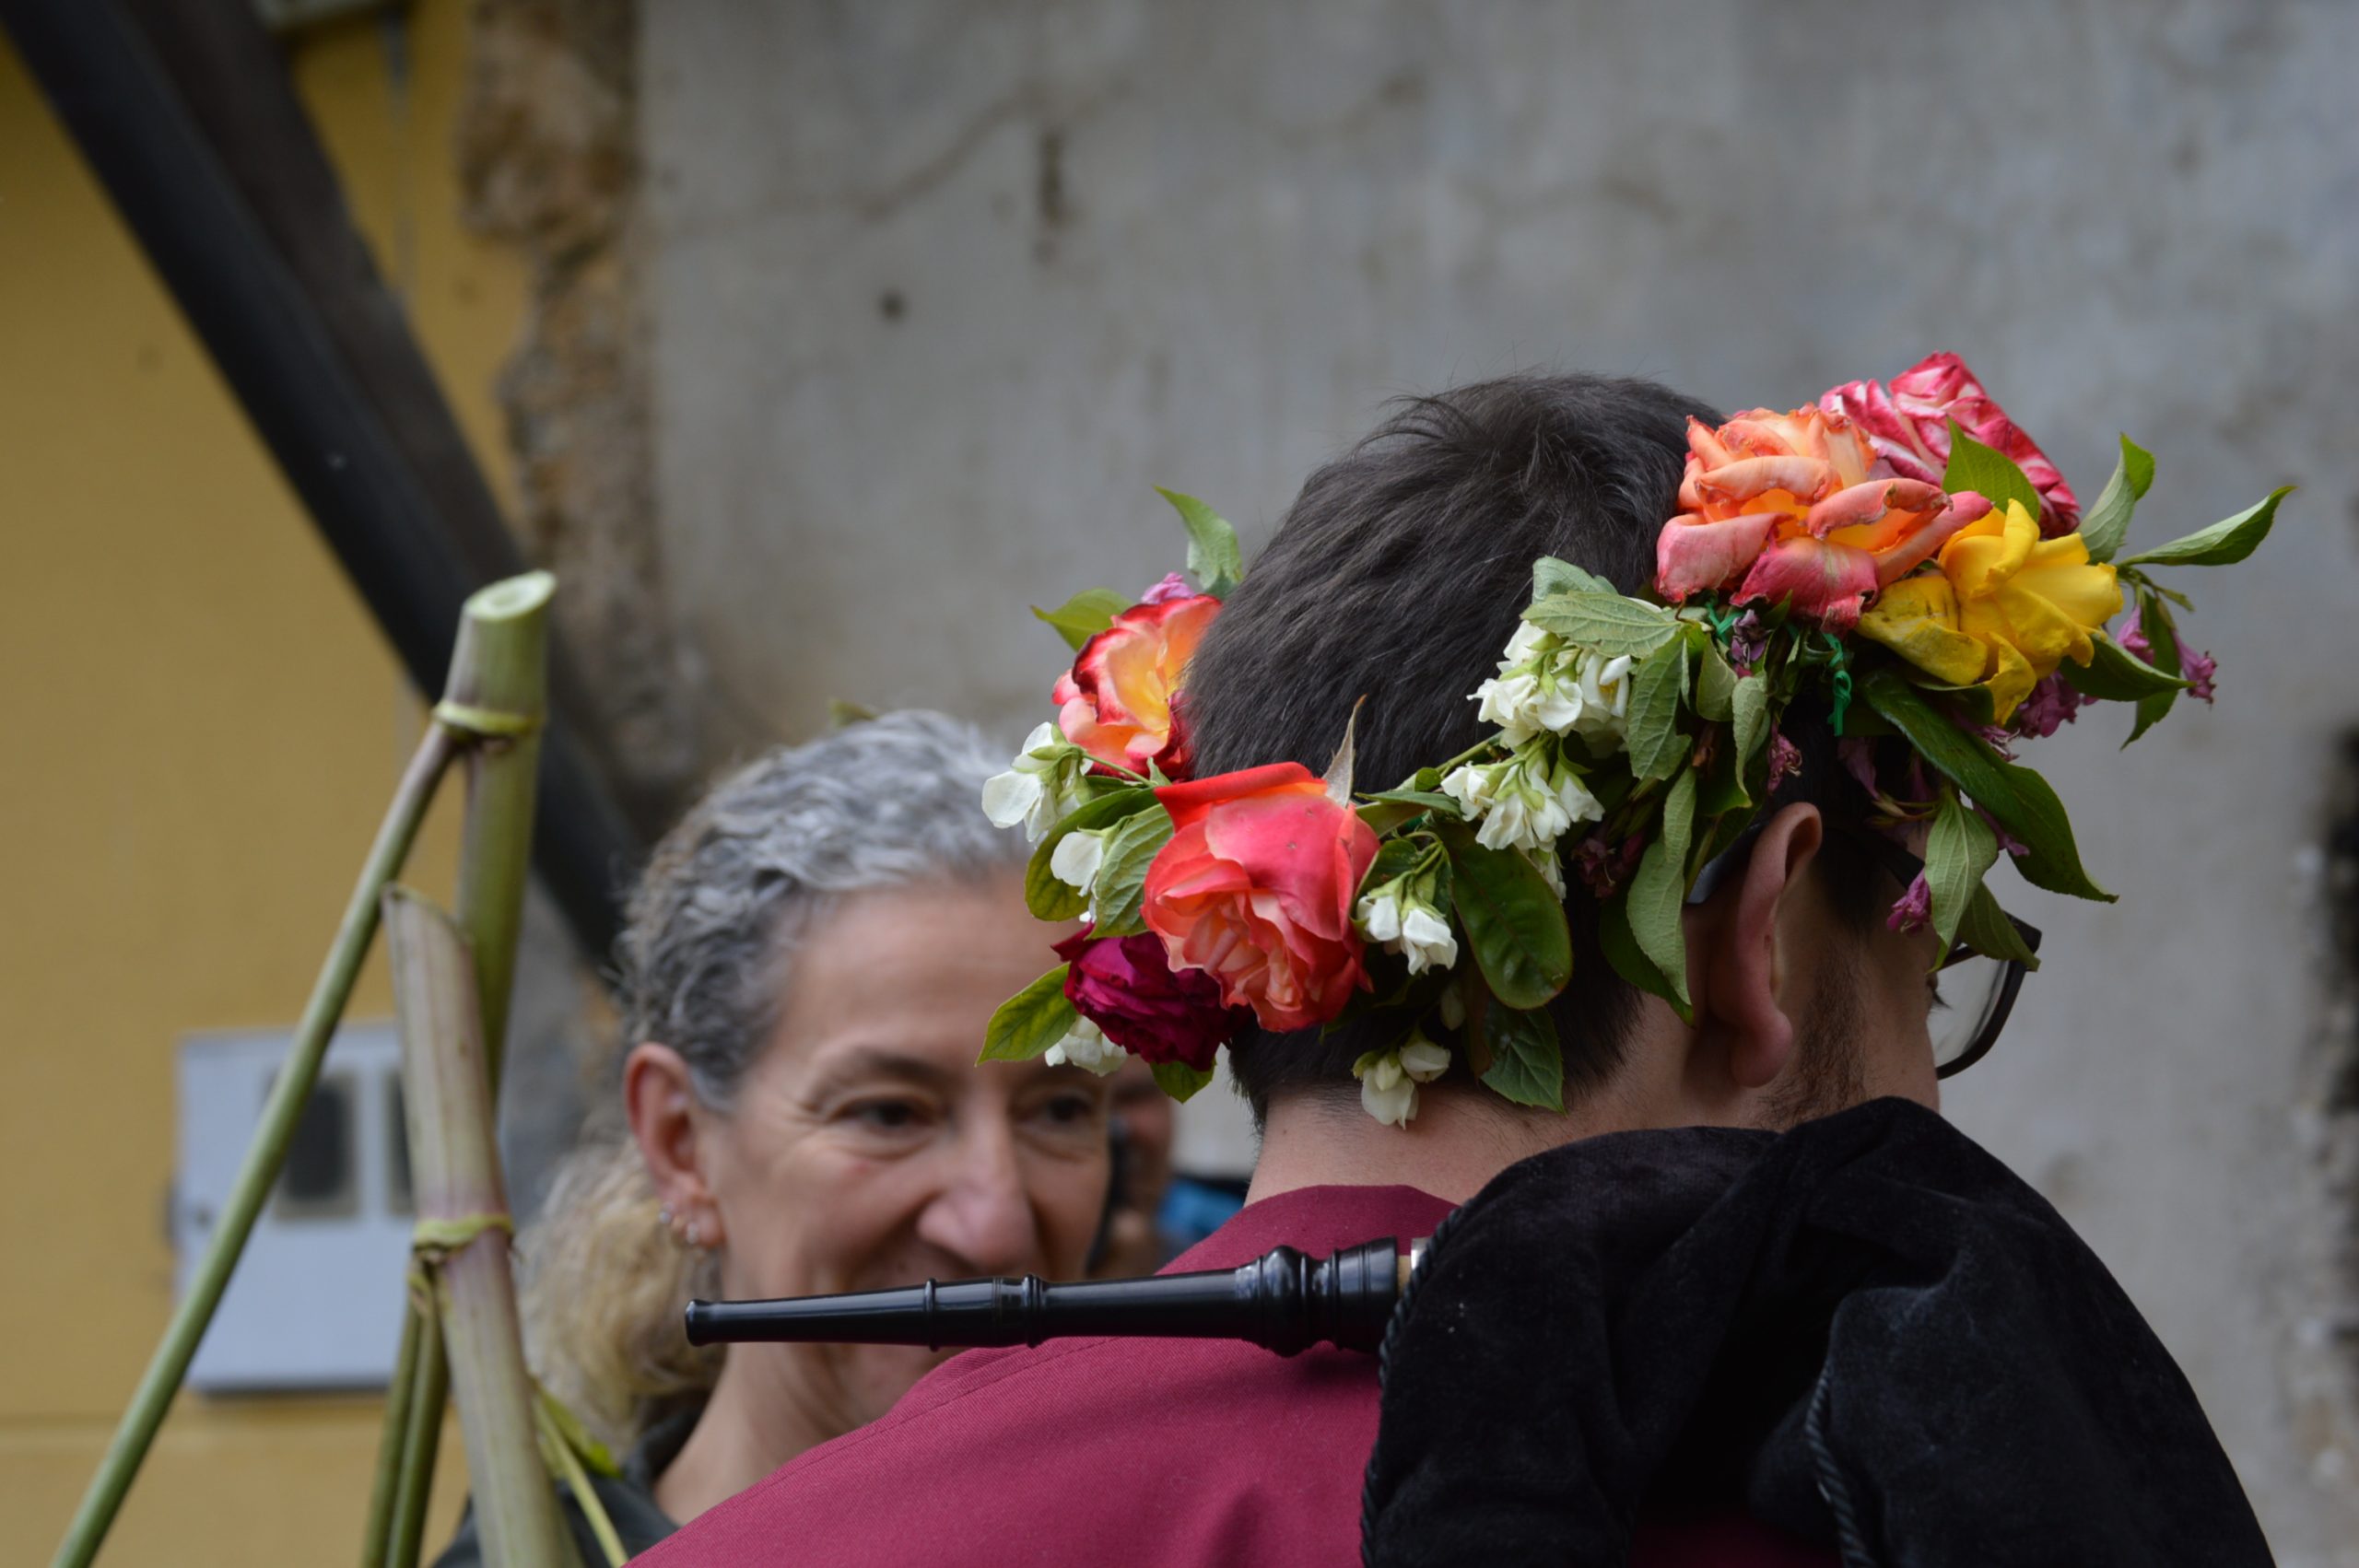 fotogalería| Los Maios de Villafranca; Cañaveira, cuerda pita, flores y ganas de celebrar el cambio de estación 23